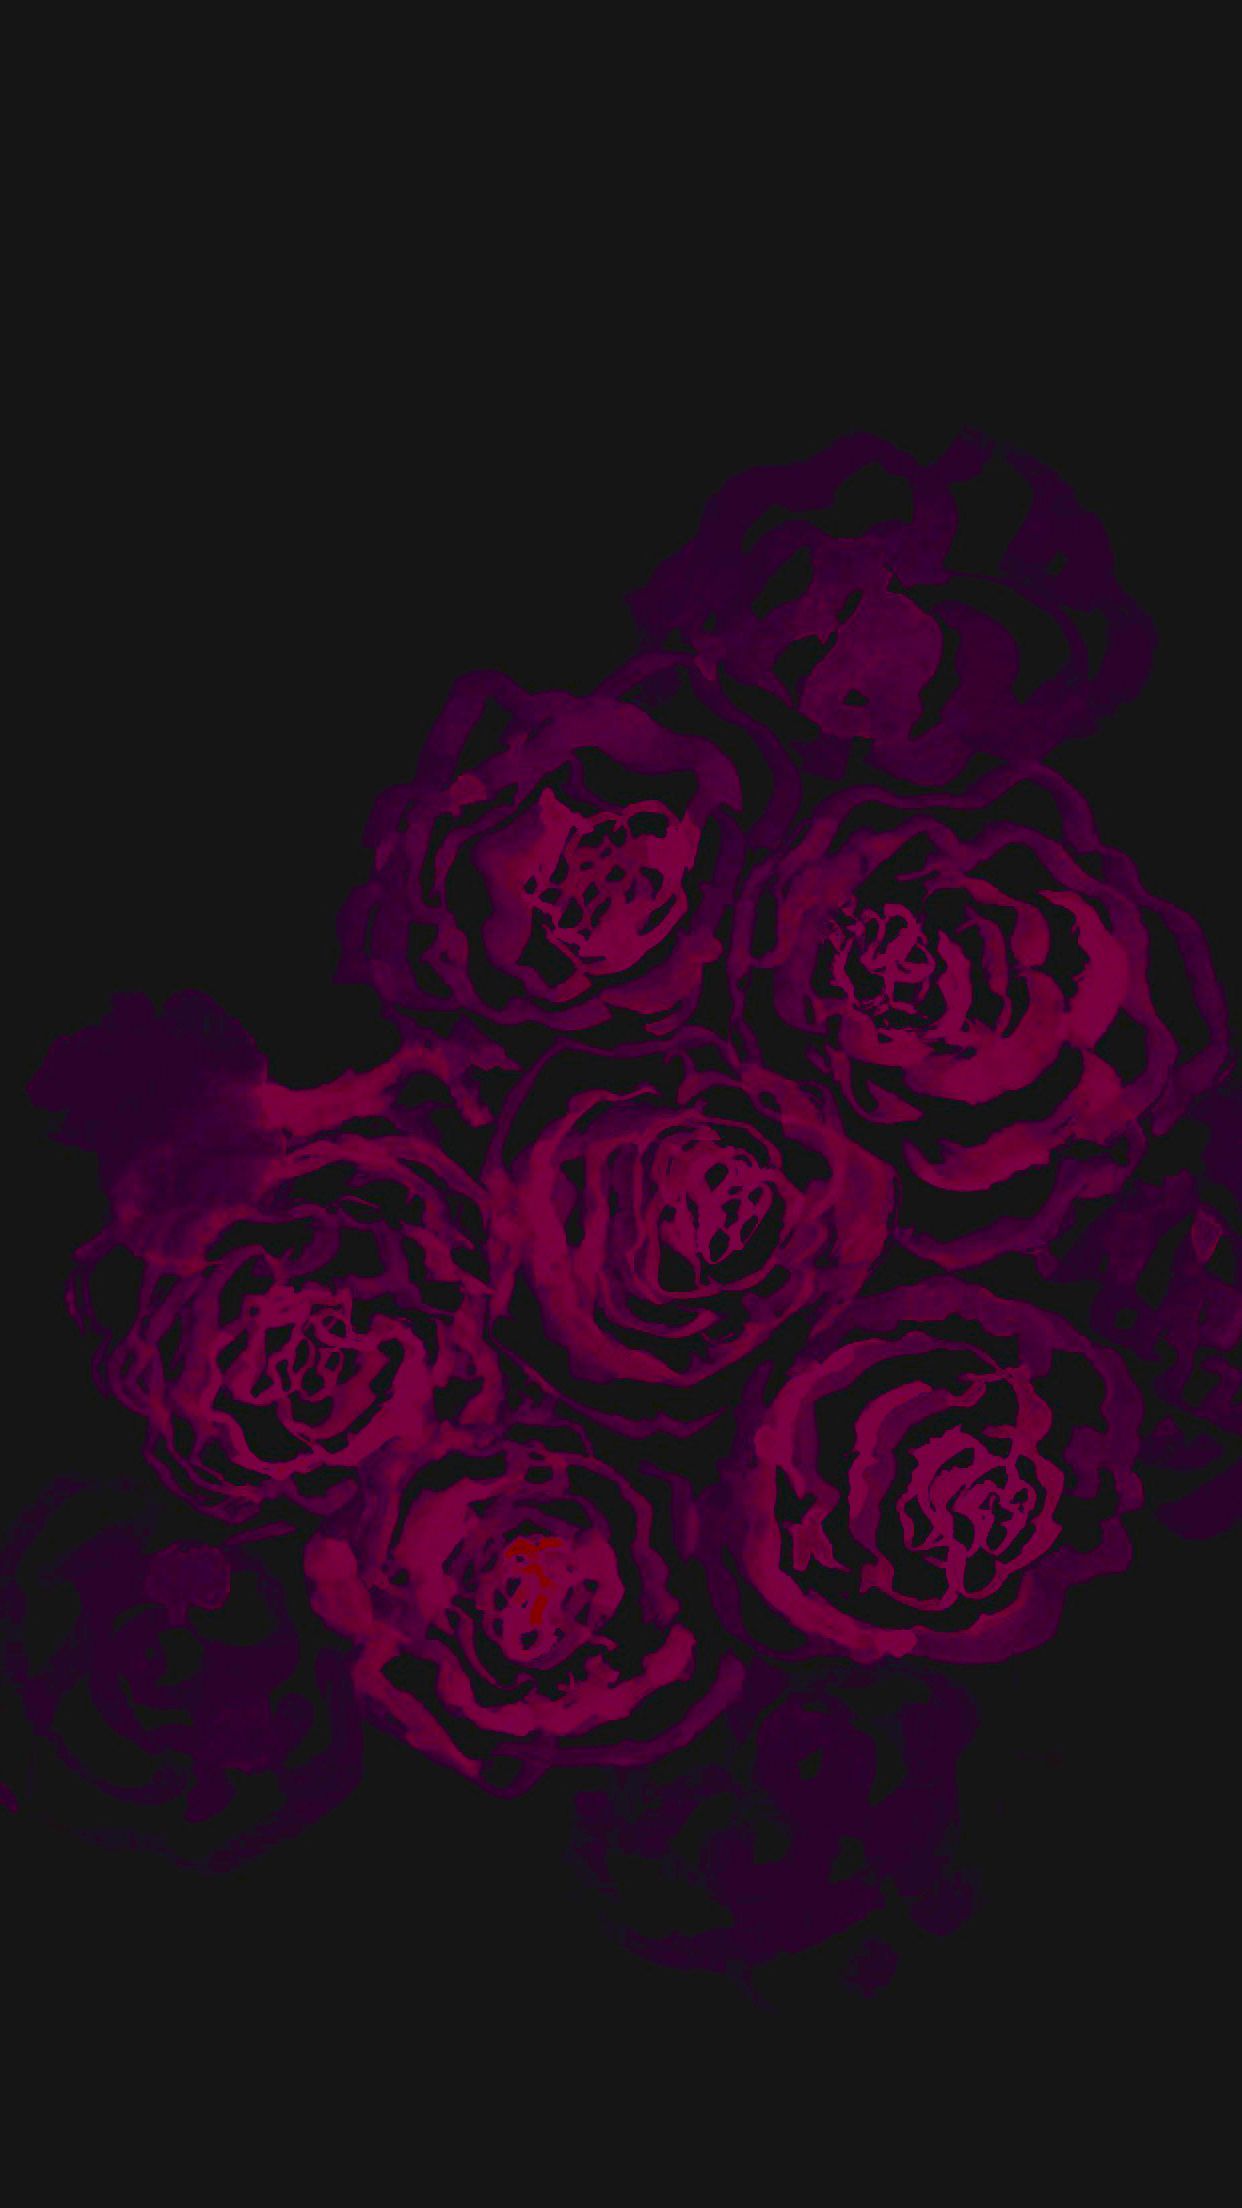 Share 171+ aesthetic rose wallpaper iphone latest - 3tdesign.edu.vn